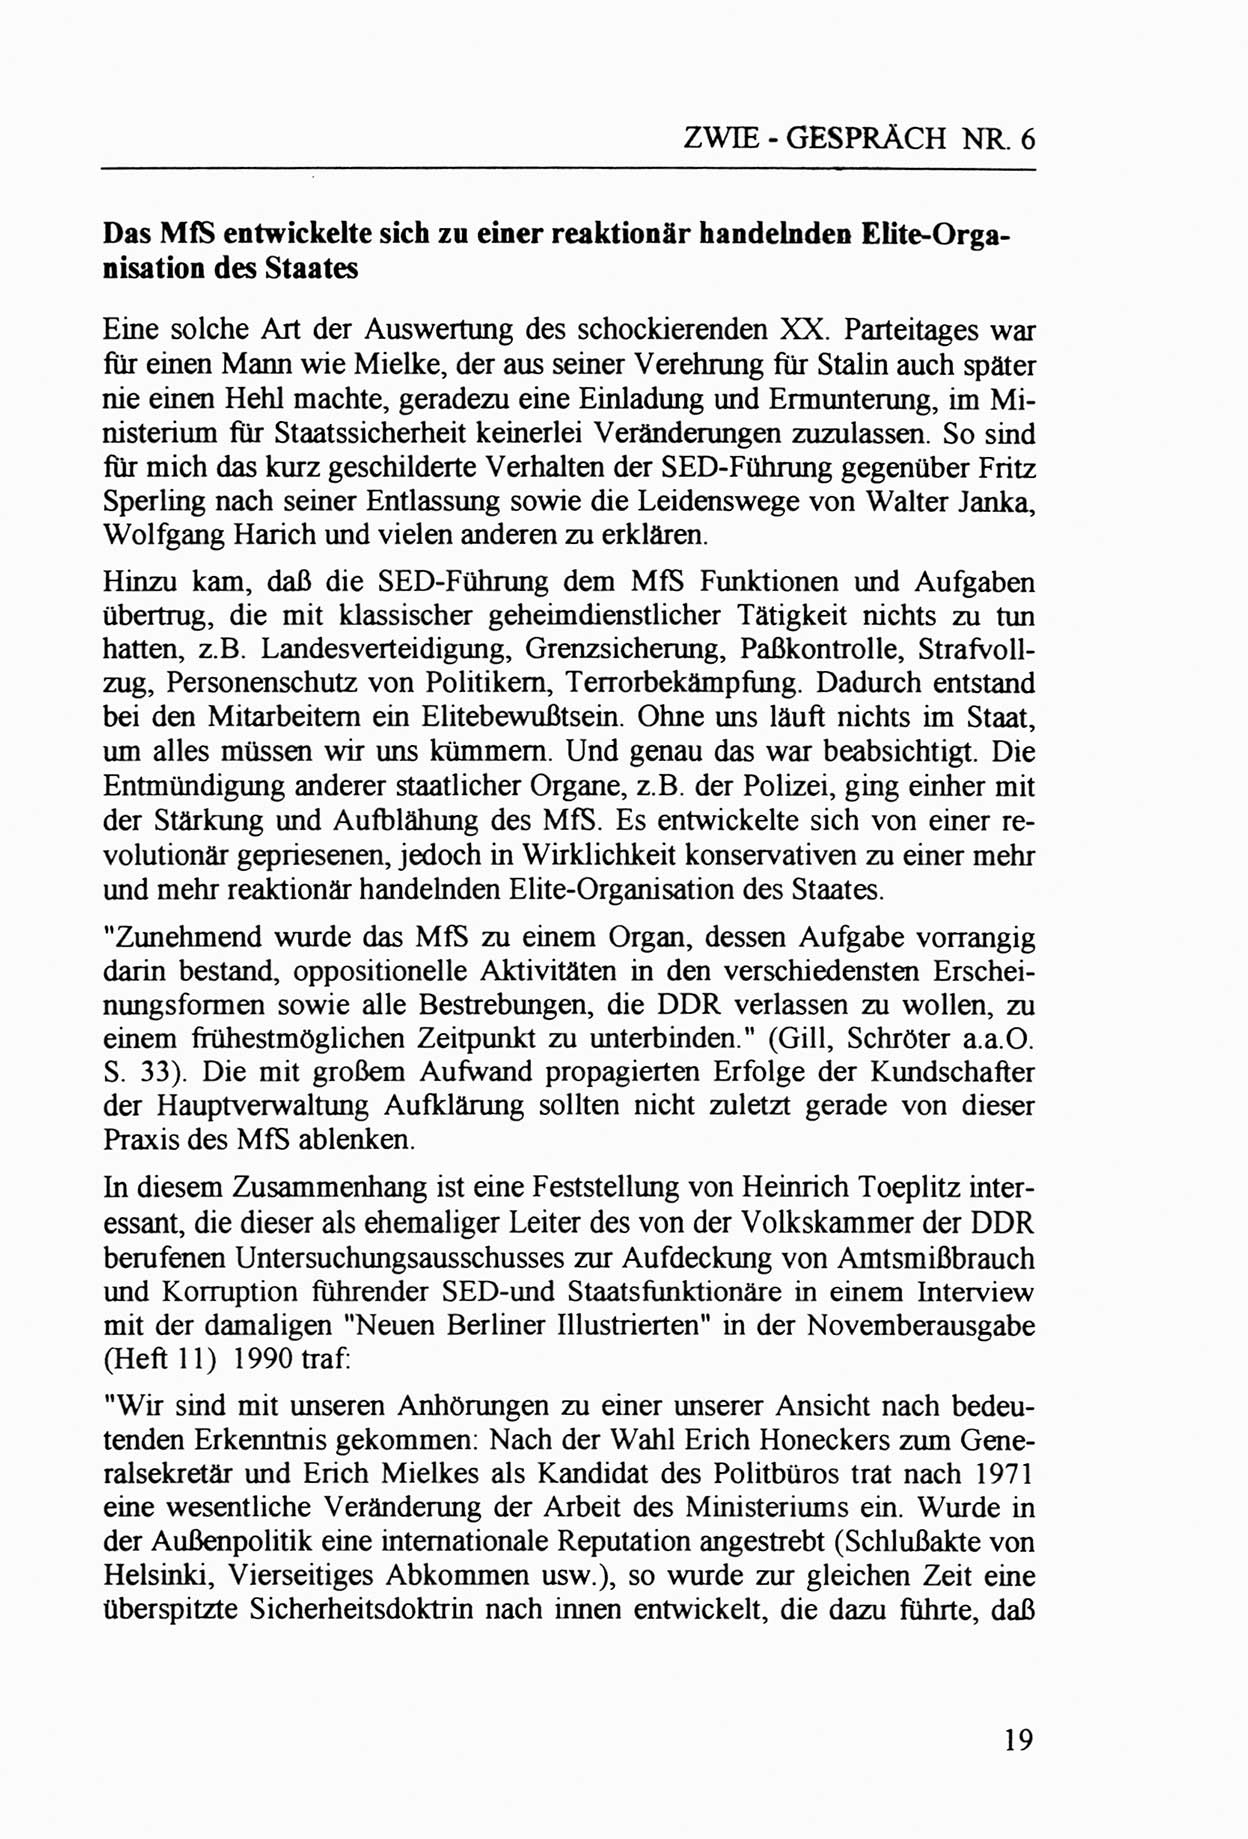 Zwie-Gespräch, Beiträge zur Aufarbeitung der Staatssicherheits-Vergangenheit [Deutsche Demokratische Republik (DDR)], Ausgabe Nr. 6, Berlin 1992, Seite 19 (Zwie-Gespr. Ausg. 6 1992, S. 19)